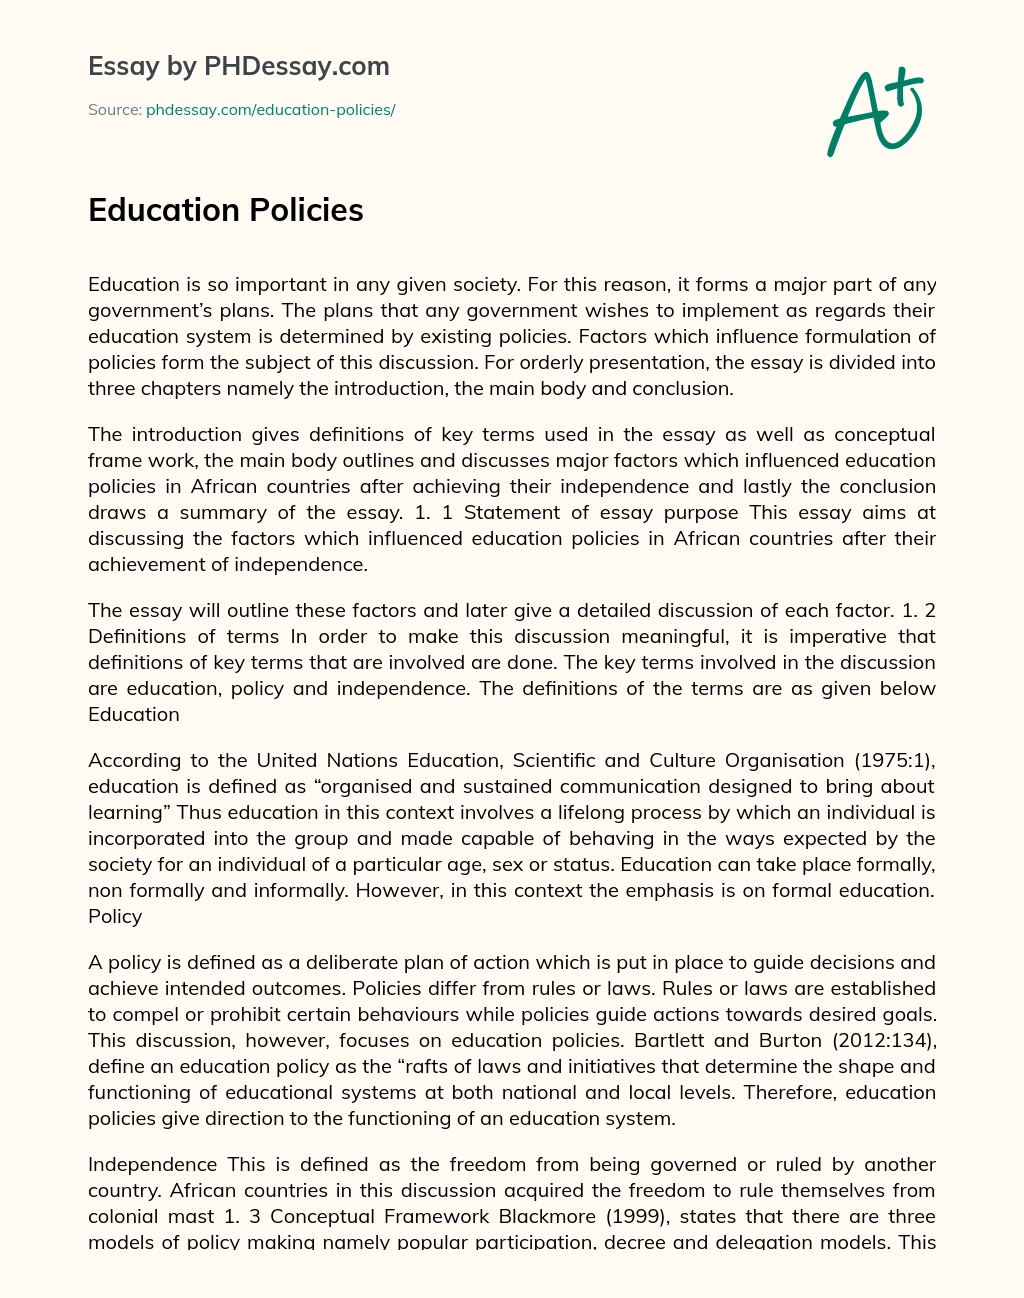 Education Policies essay